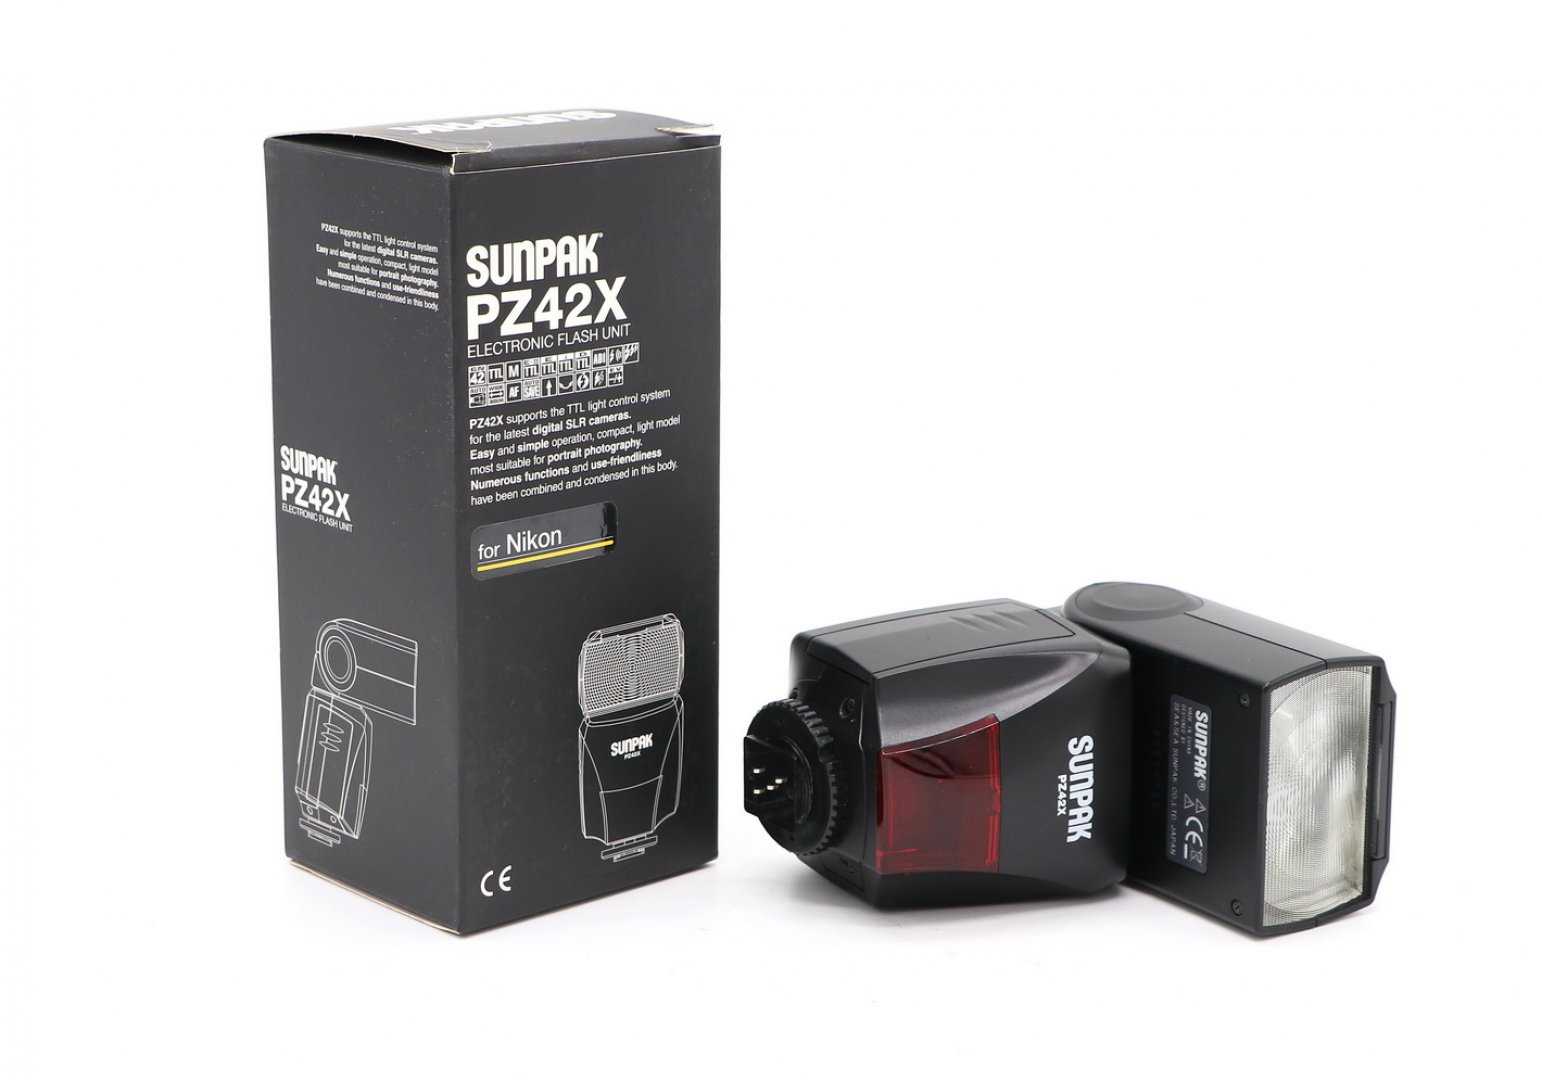 Sunpak pz42x digital flash for canon купить по акционной цене , отзывы и обзоры.